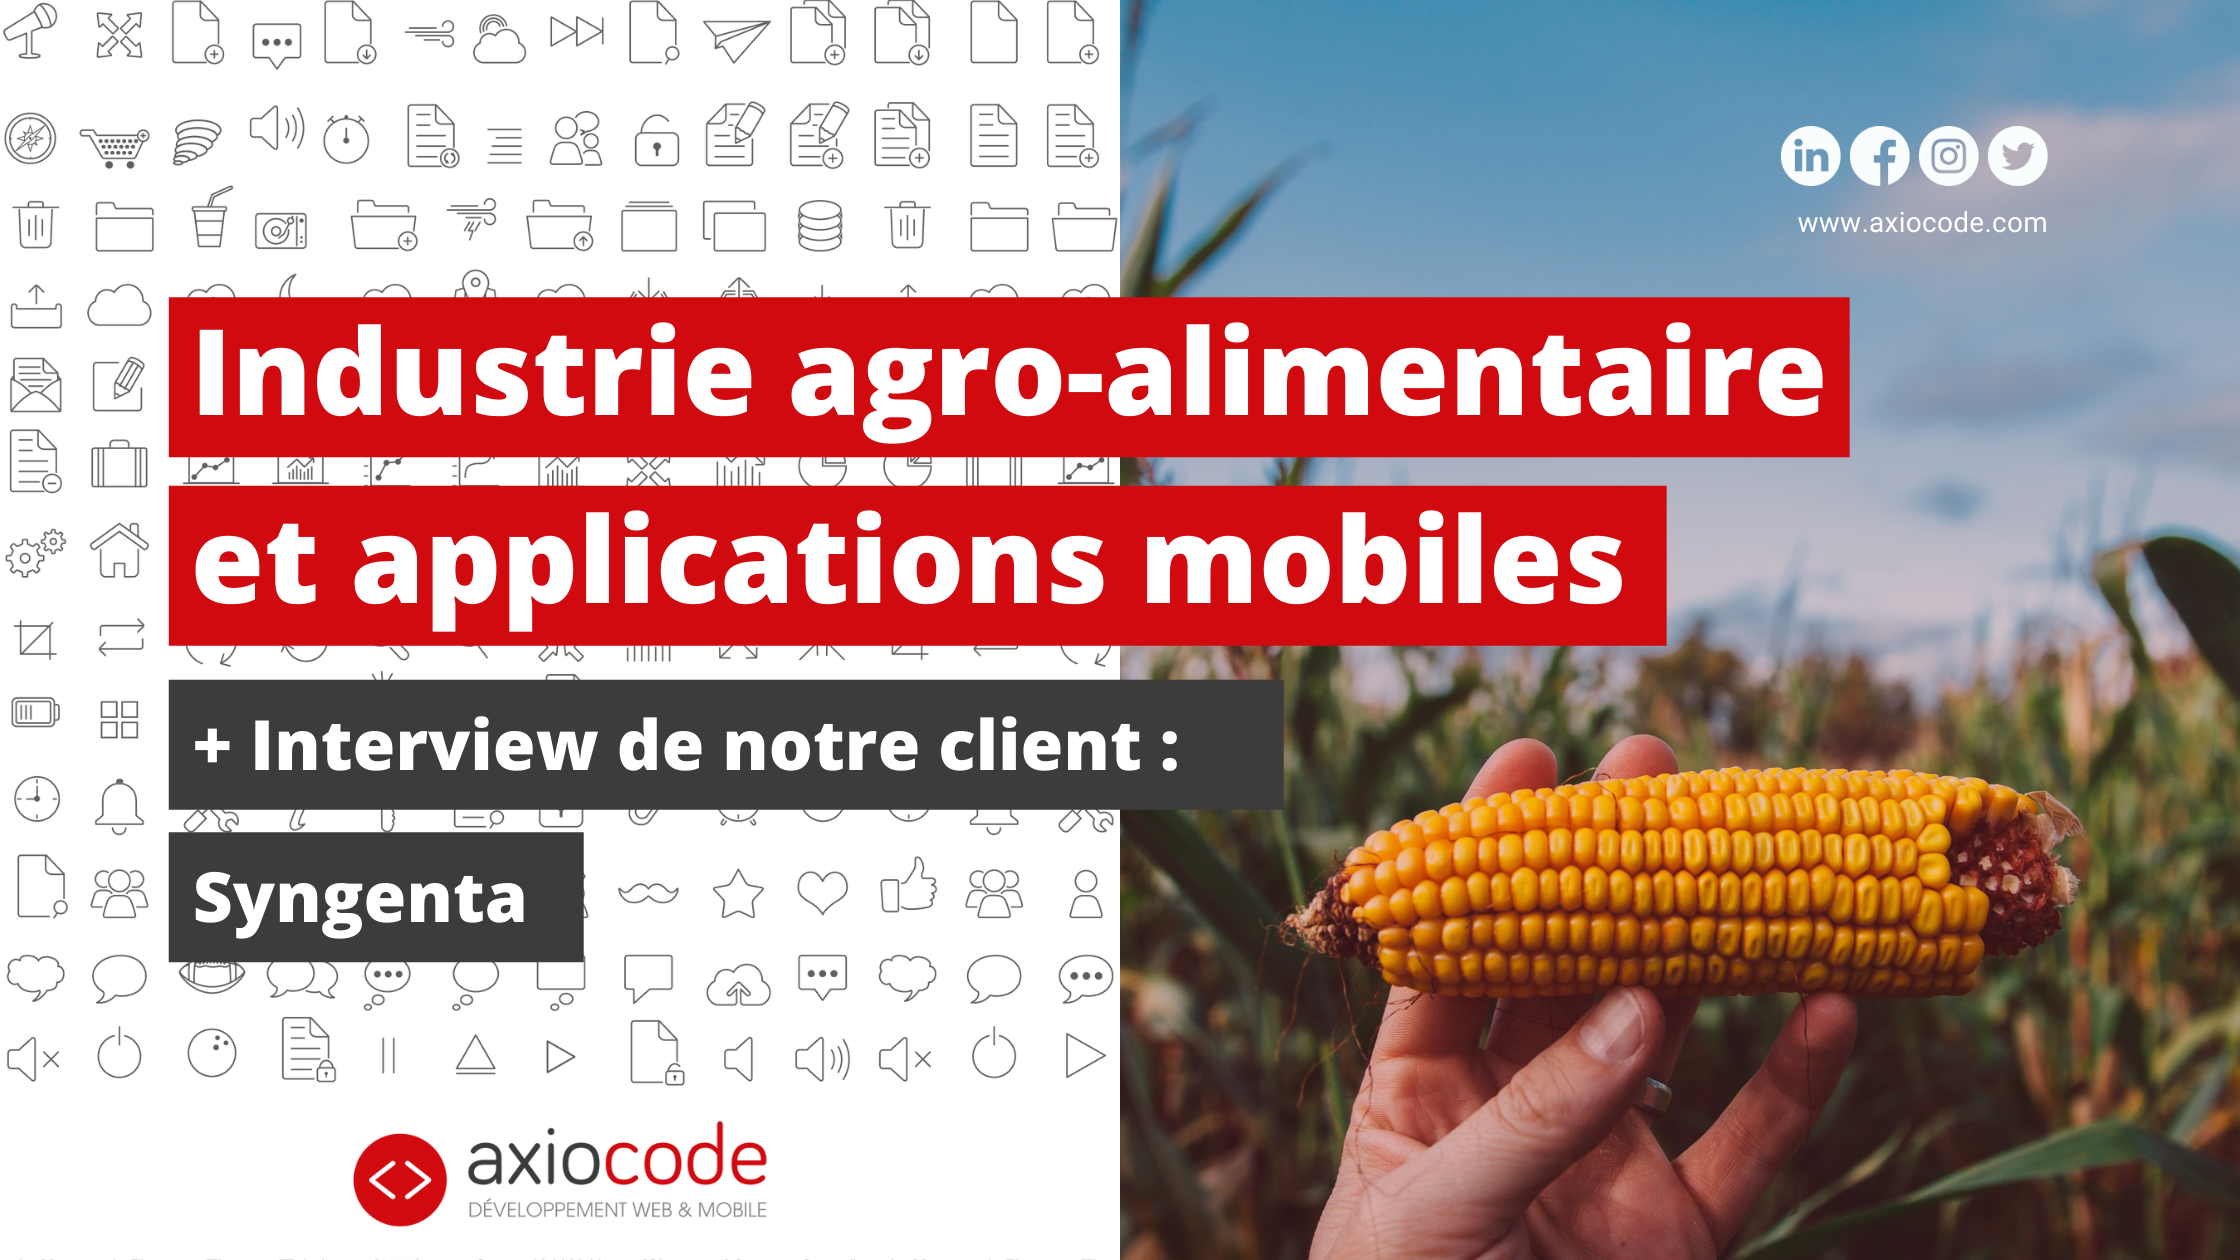 Mécanisation, numérisation, robotisation, L'industrie agroalimentaire se modernise. Les applications mobiles sont des solutions numériques au service de l'agriculture.